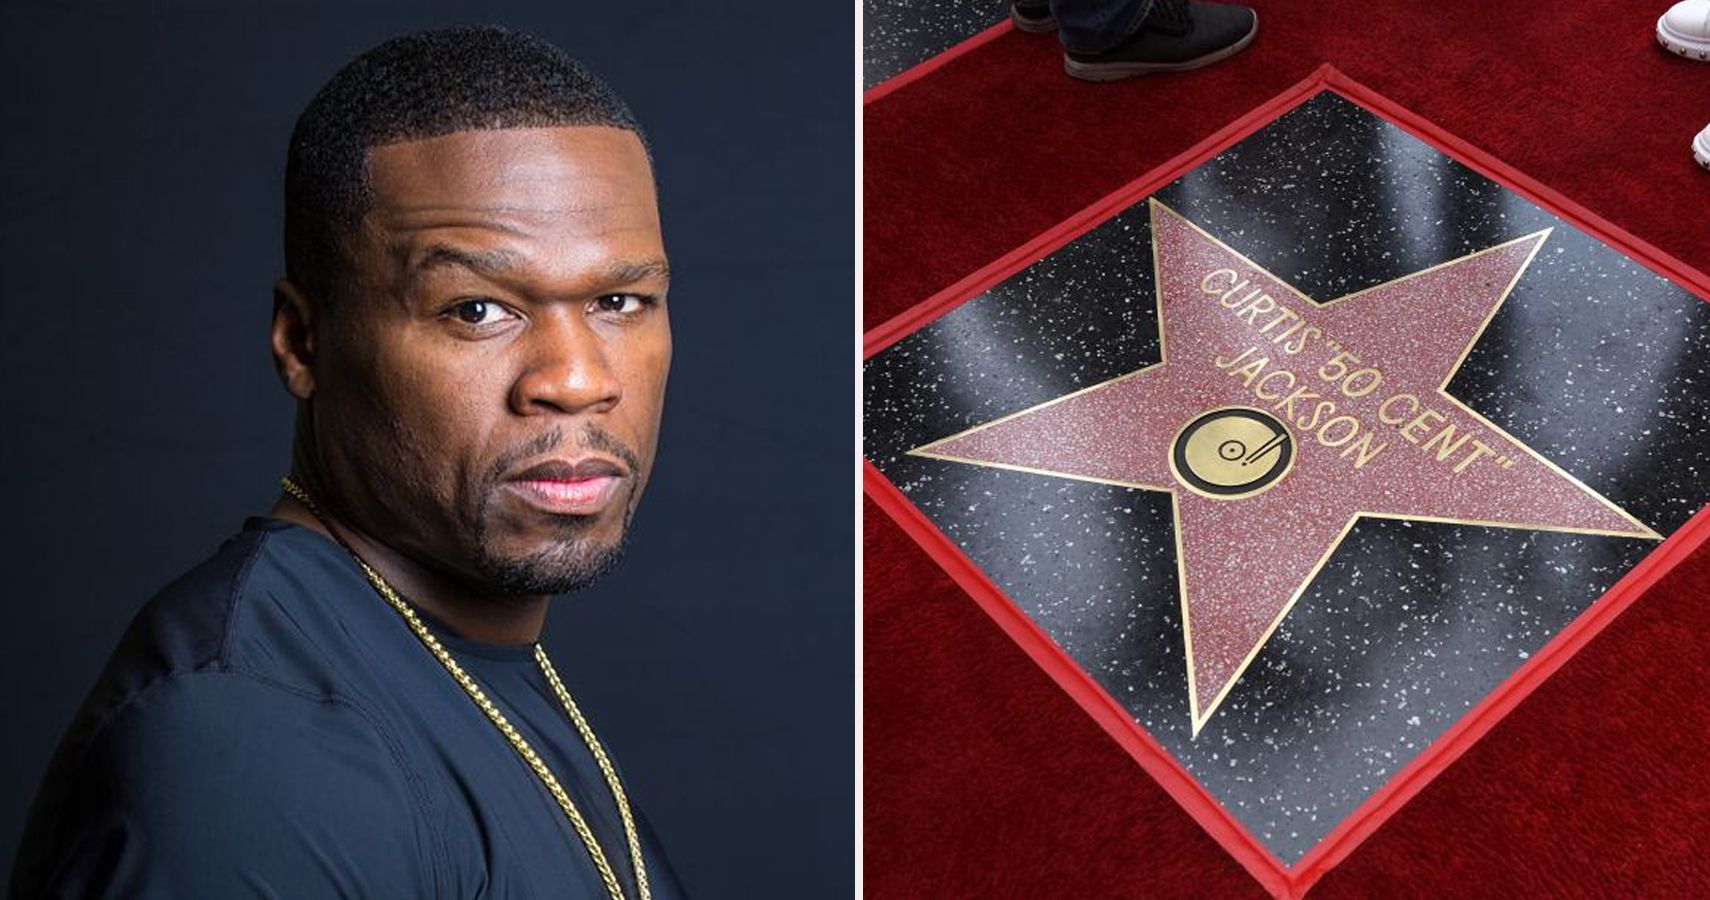 50 Cent 'não vai discutir' com a conquista de uma estrela na Calçada da Fama de Hollywood